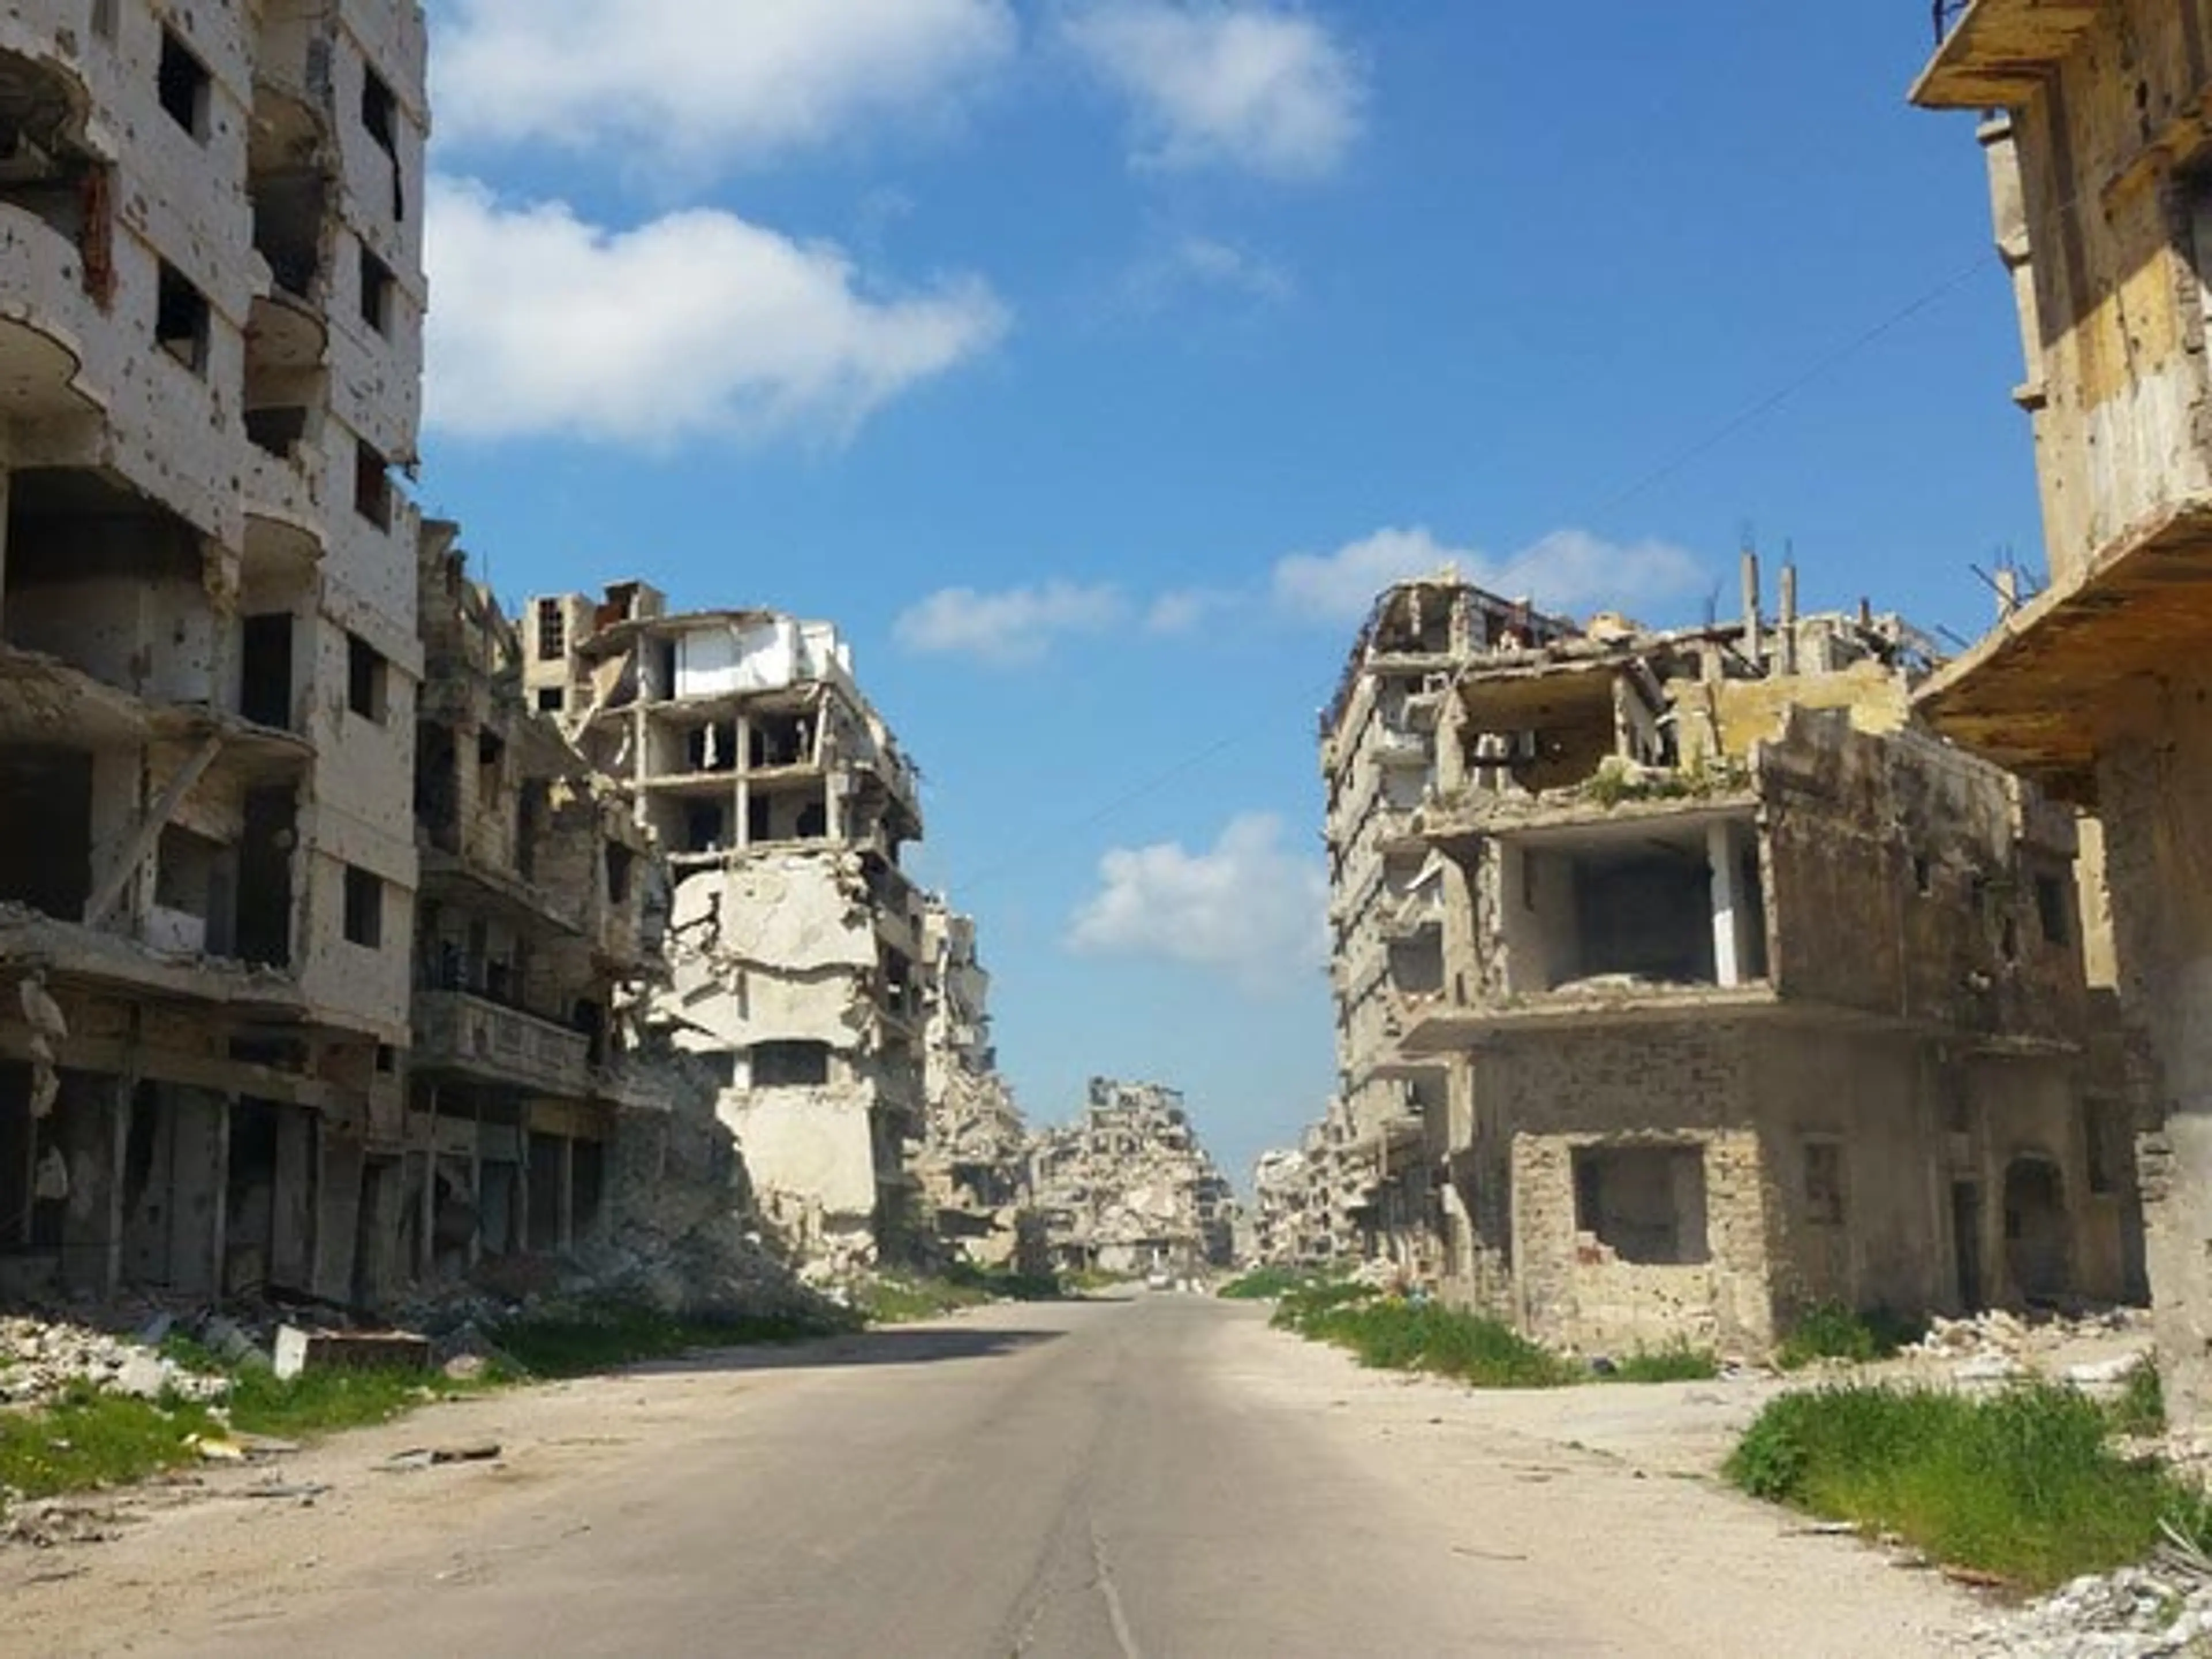 Asia - Syria - Homs street devastated by war.jpg